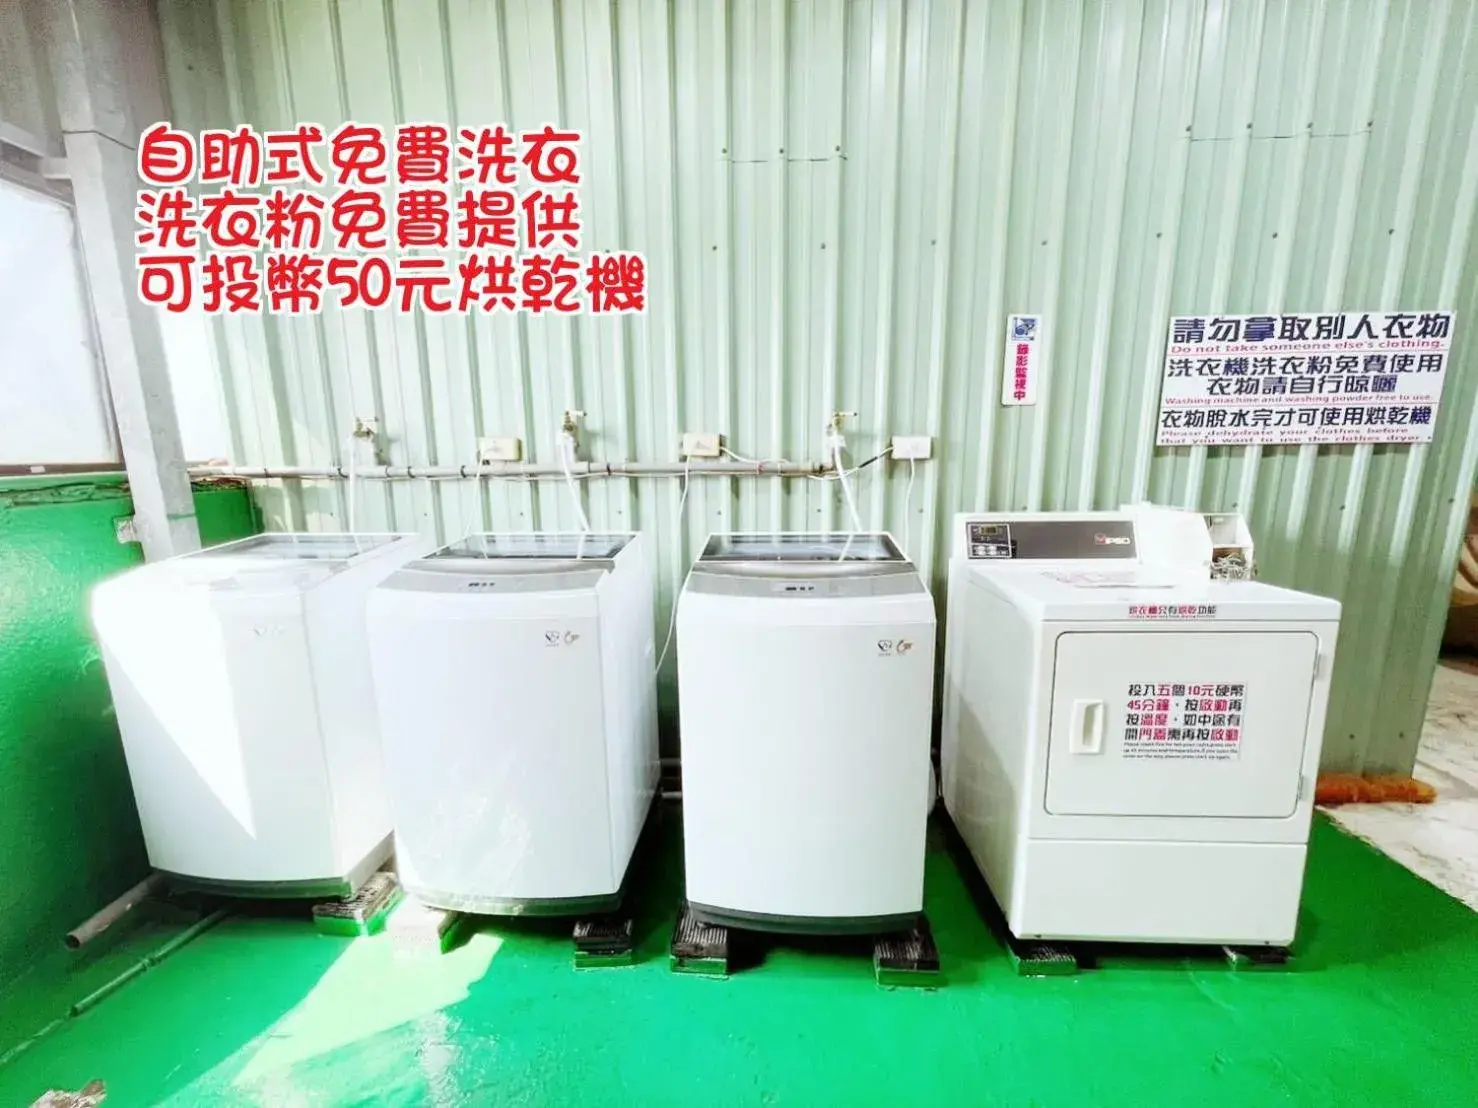 washing machine in Hua Ku Hotel